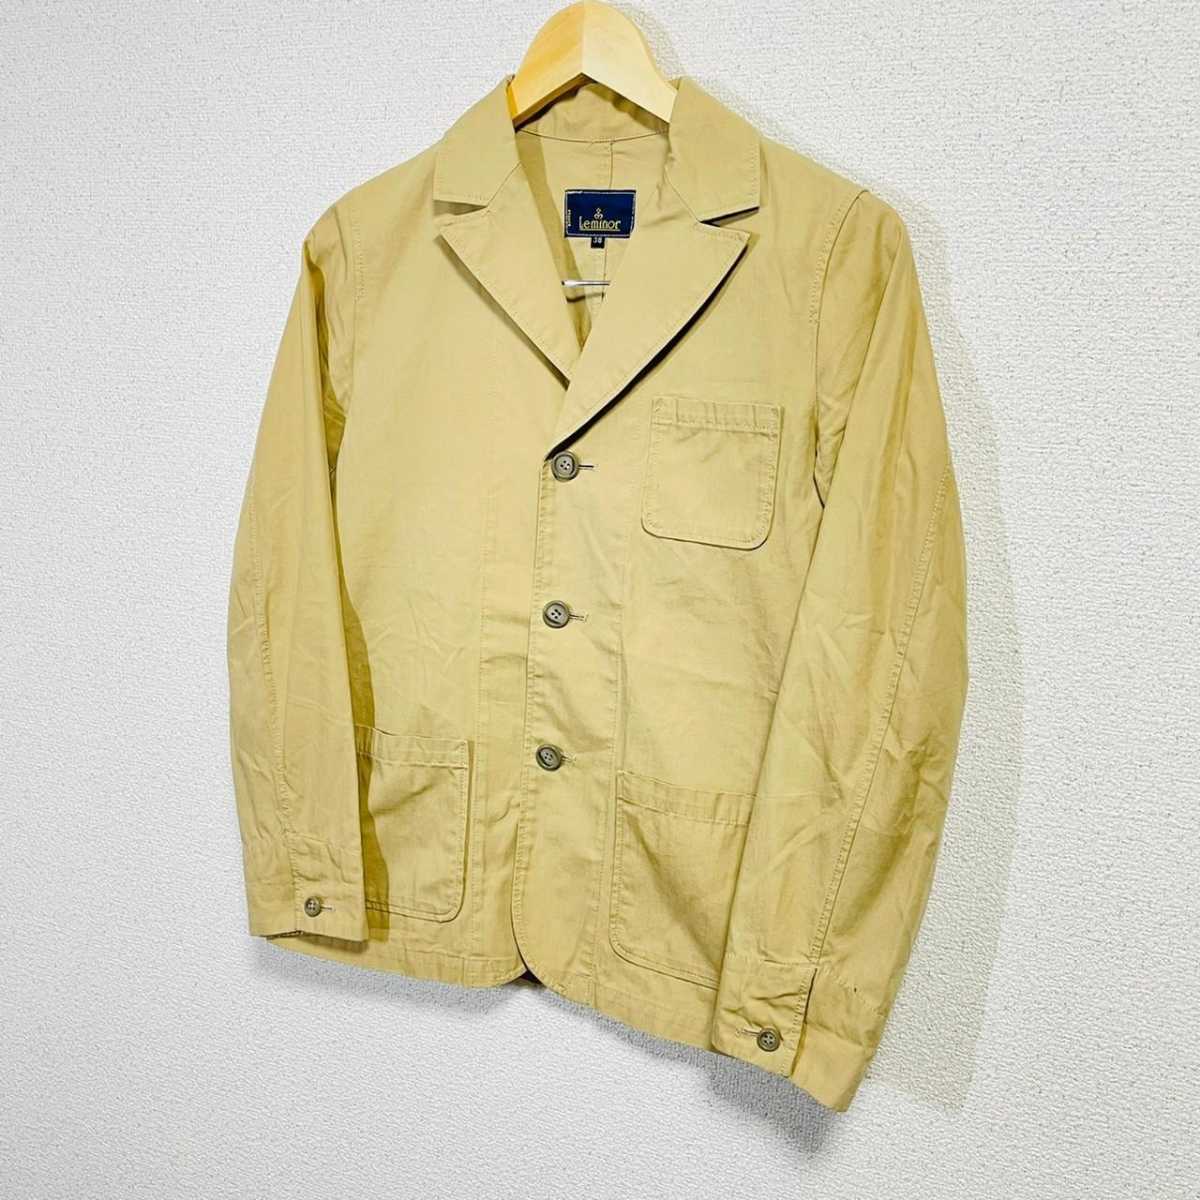 F4133dL◇Le Minor ... Noah ◇ размер  38 M...  пиджак  тонкий  бежевый   мужской   сделано в Японии   хлопок 100%  хлопок   пиджак  JACKET  взрослый  повседневный 